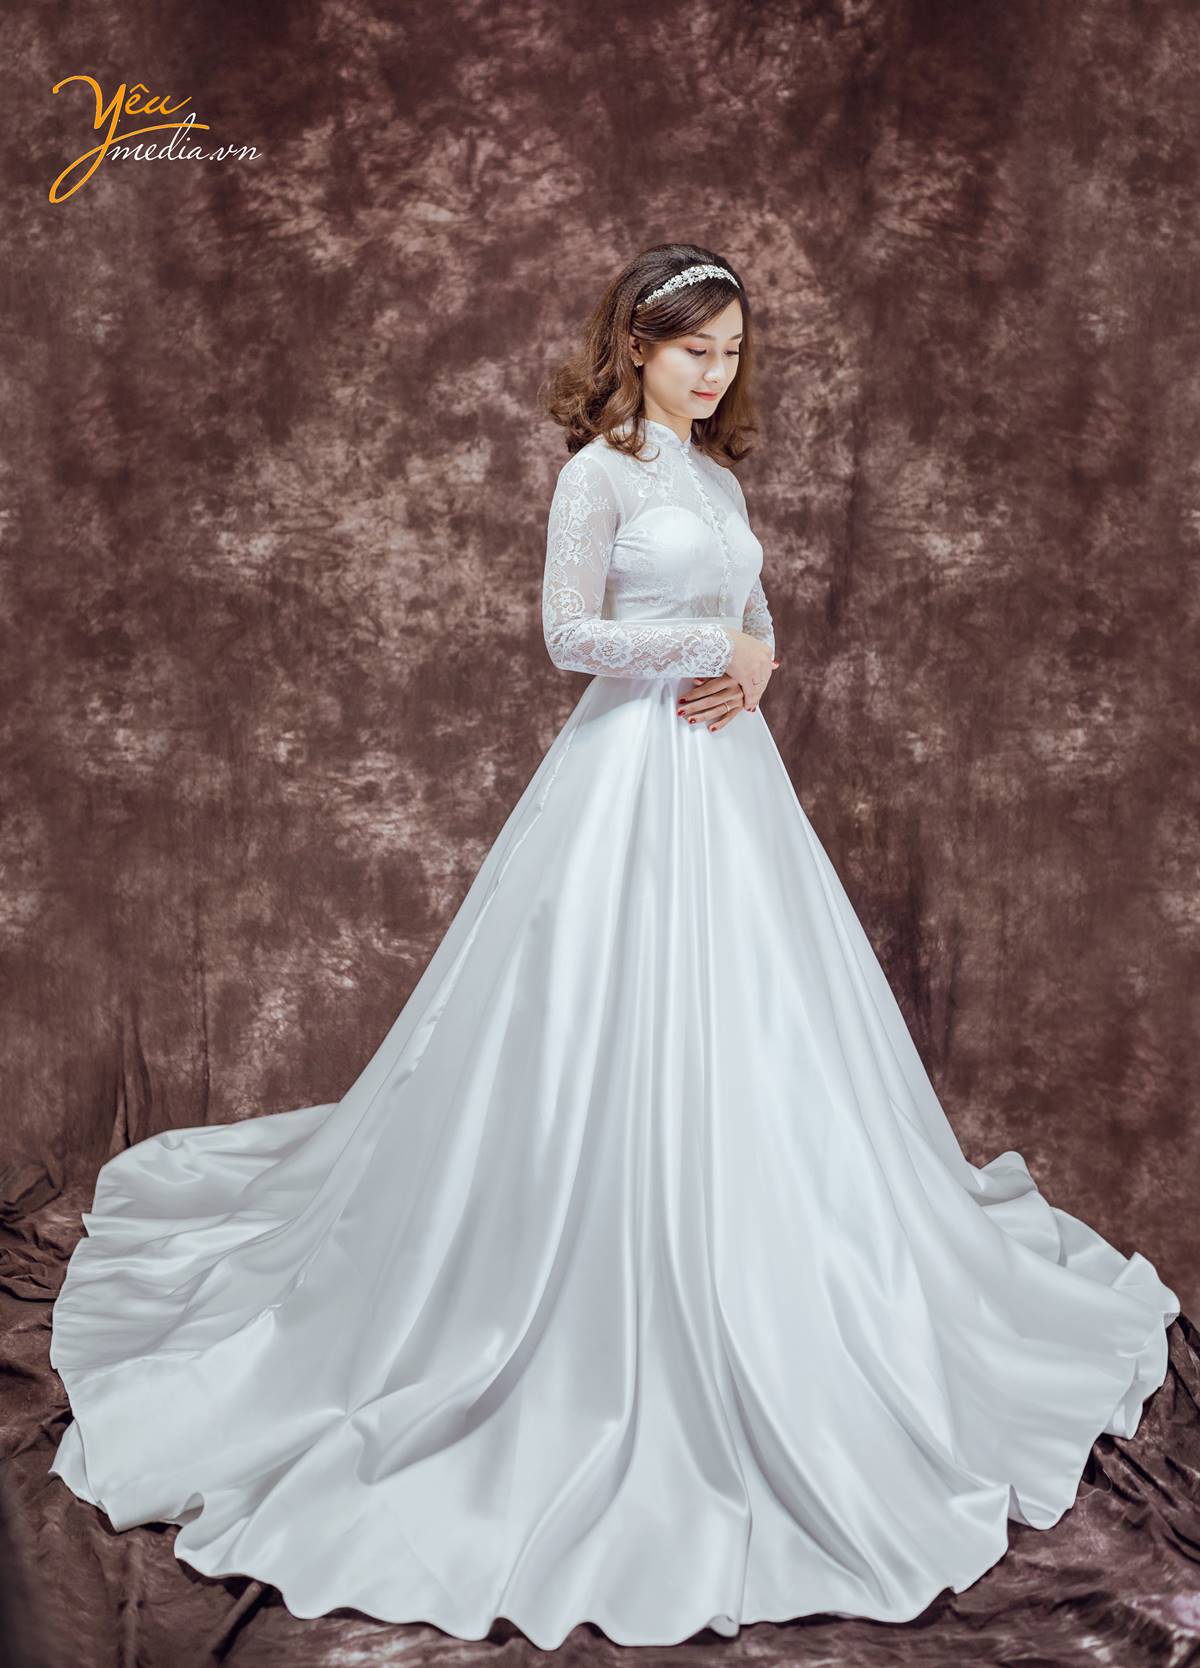 Phần đuôi váy xòe nhẹ được may bằng chất liệu lụa giúp cô dâu di chuyển dễ dàng. Chiếc váy cưới Ariadne phù hợp khi chụp ảnh cưới phong cách cổ điển và mặc trong ngày cưới.